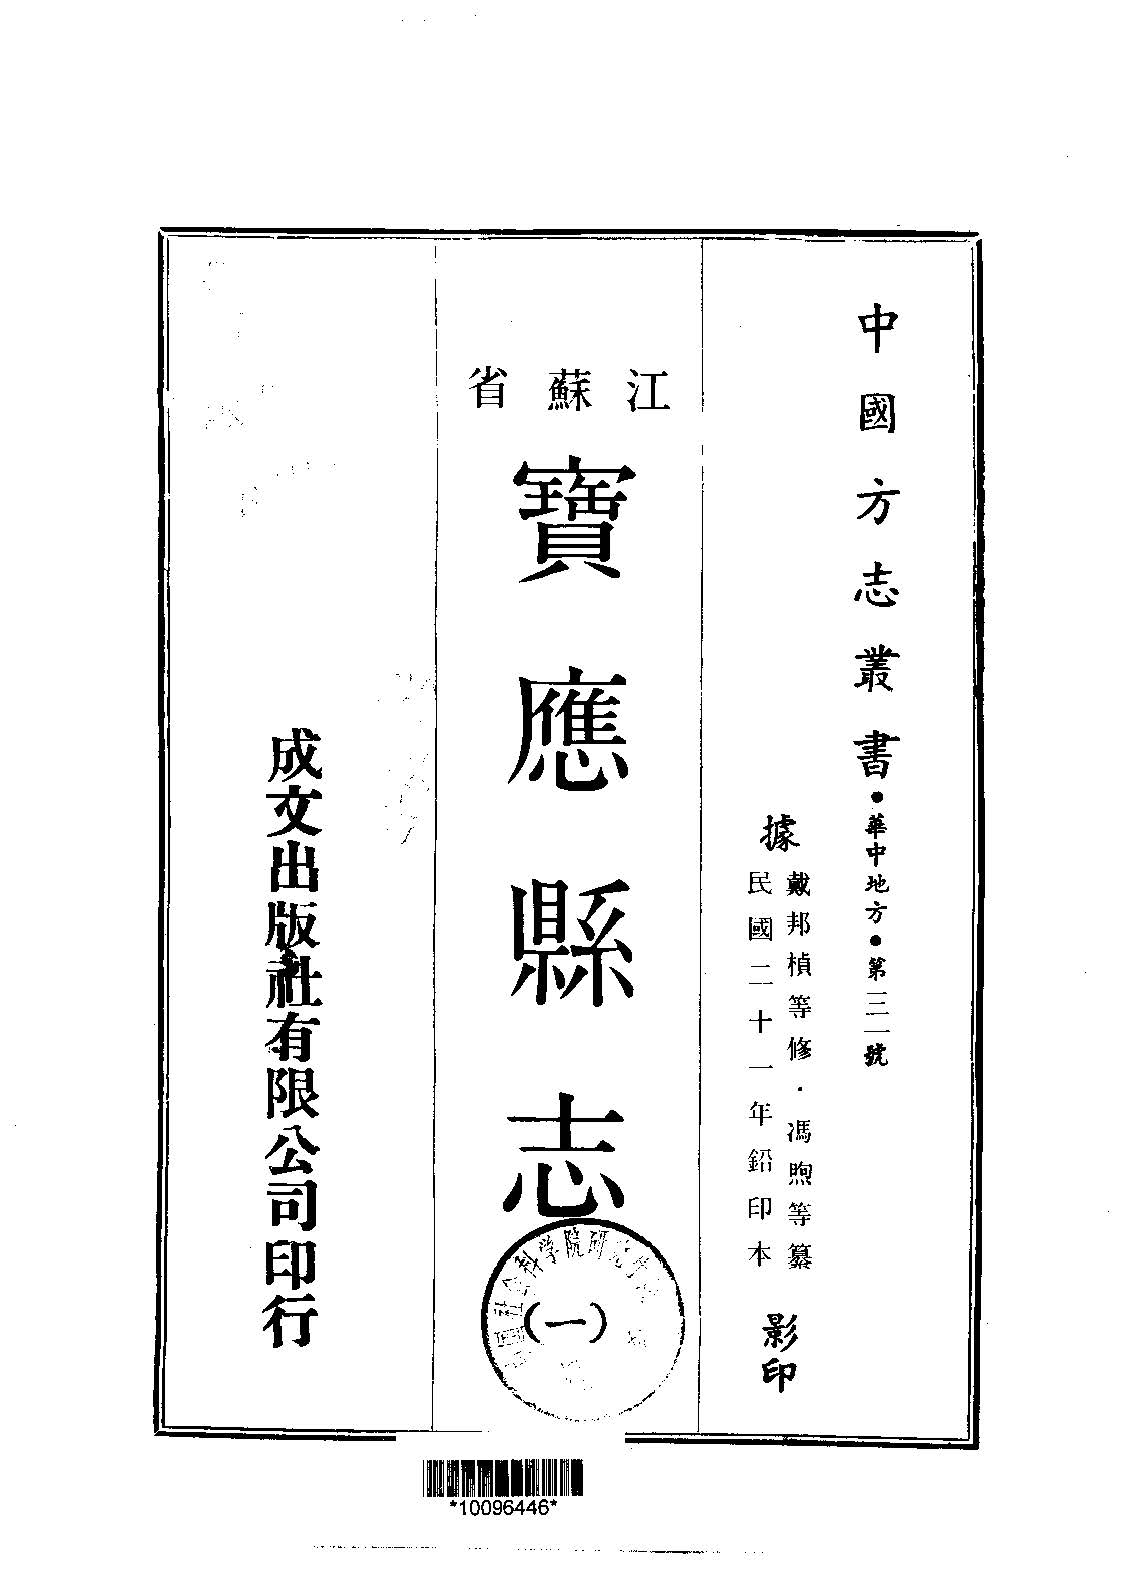 宝应县志的书籍封面